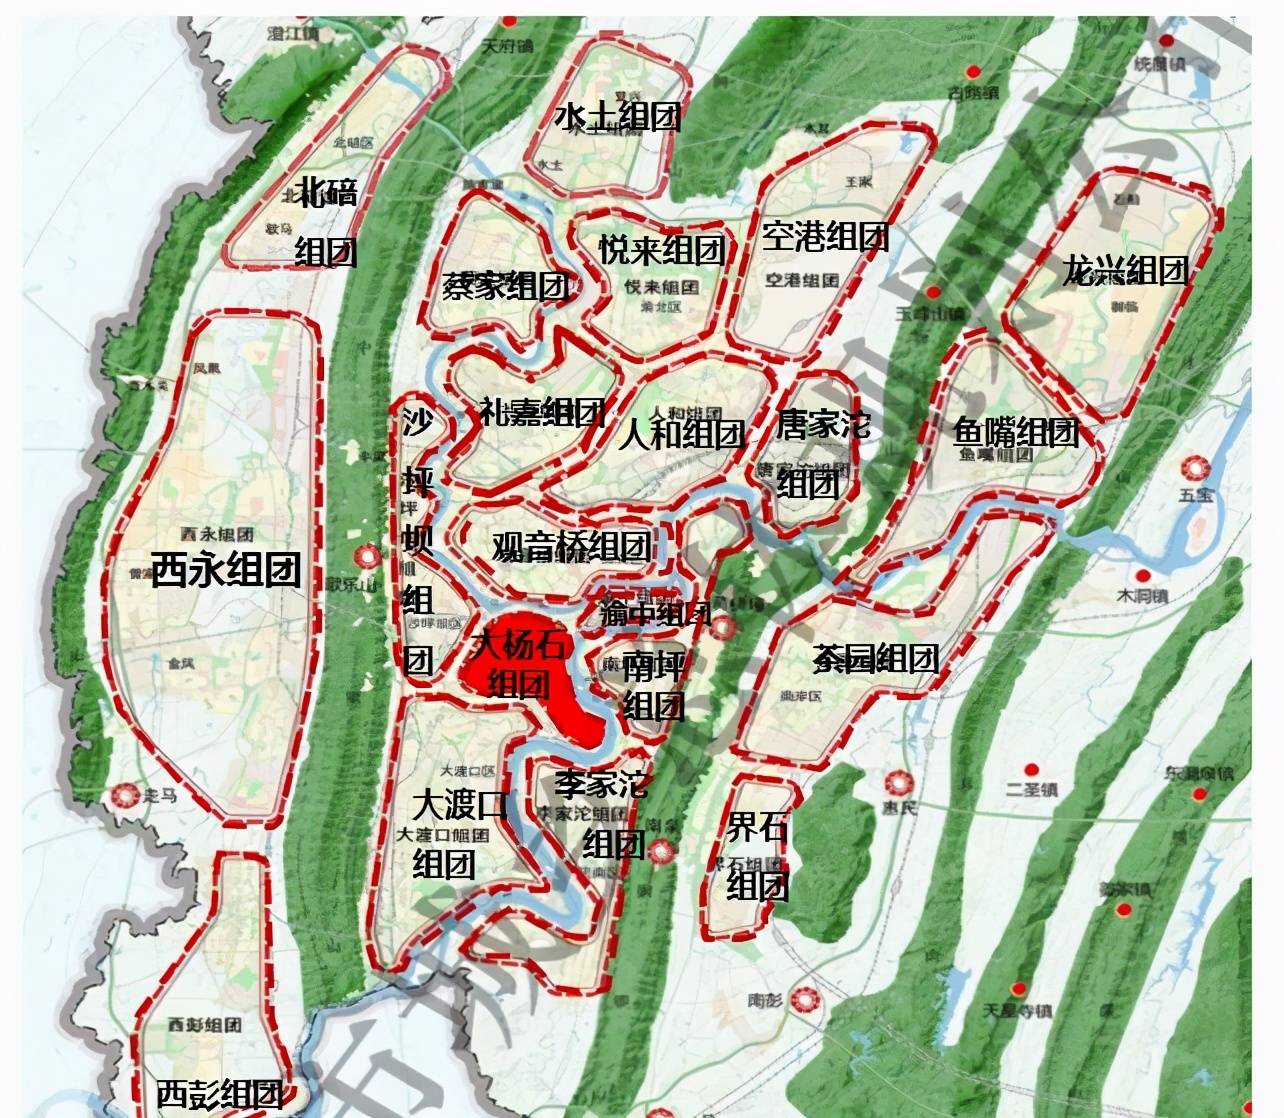 根据重庆国土空间规划(2019-2035年)建议,将构建"四山两江三谷九组团